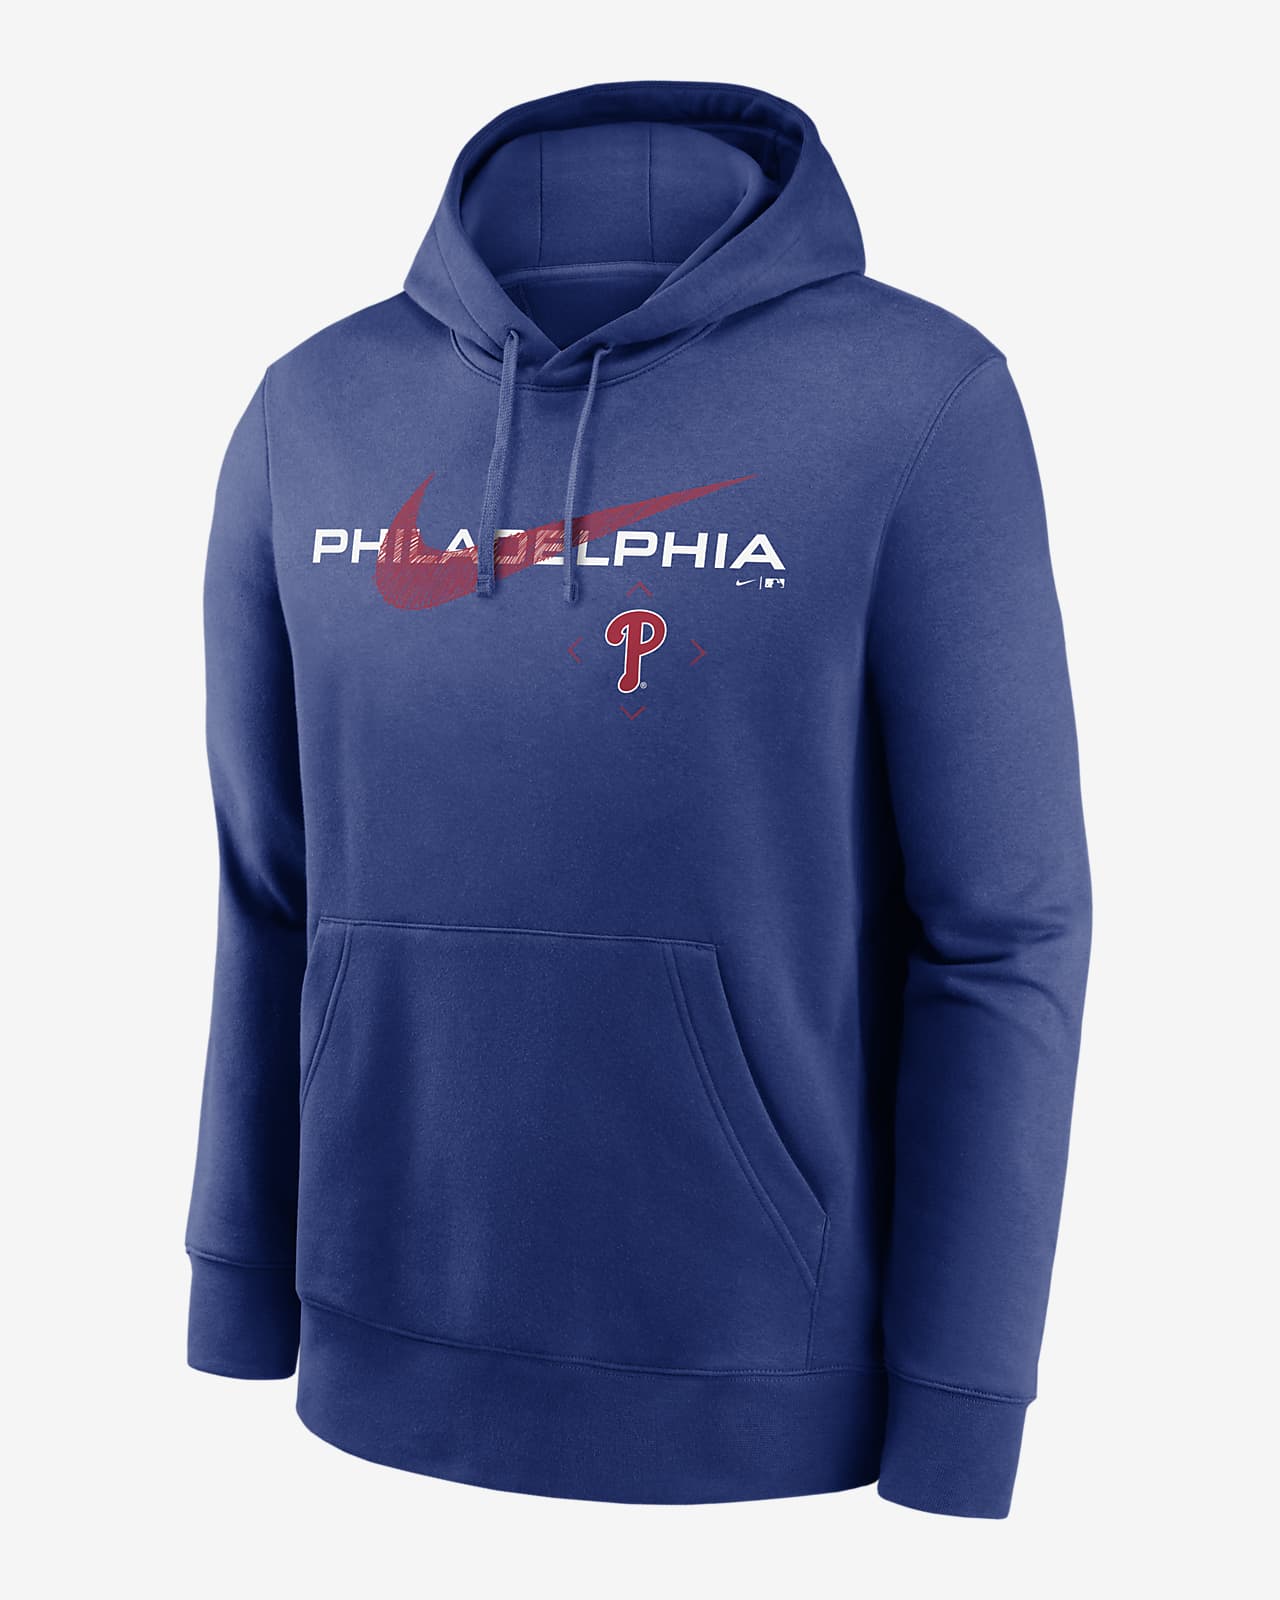 Philadelphia Baseball” Crewneck Sweatshirt